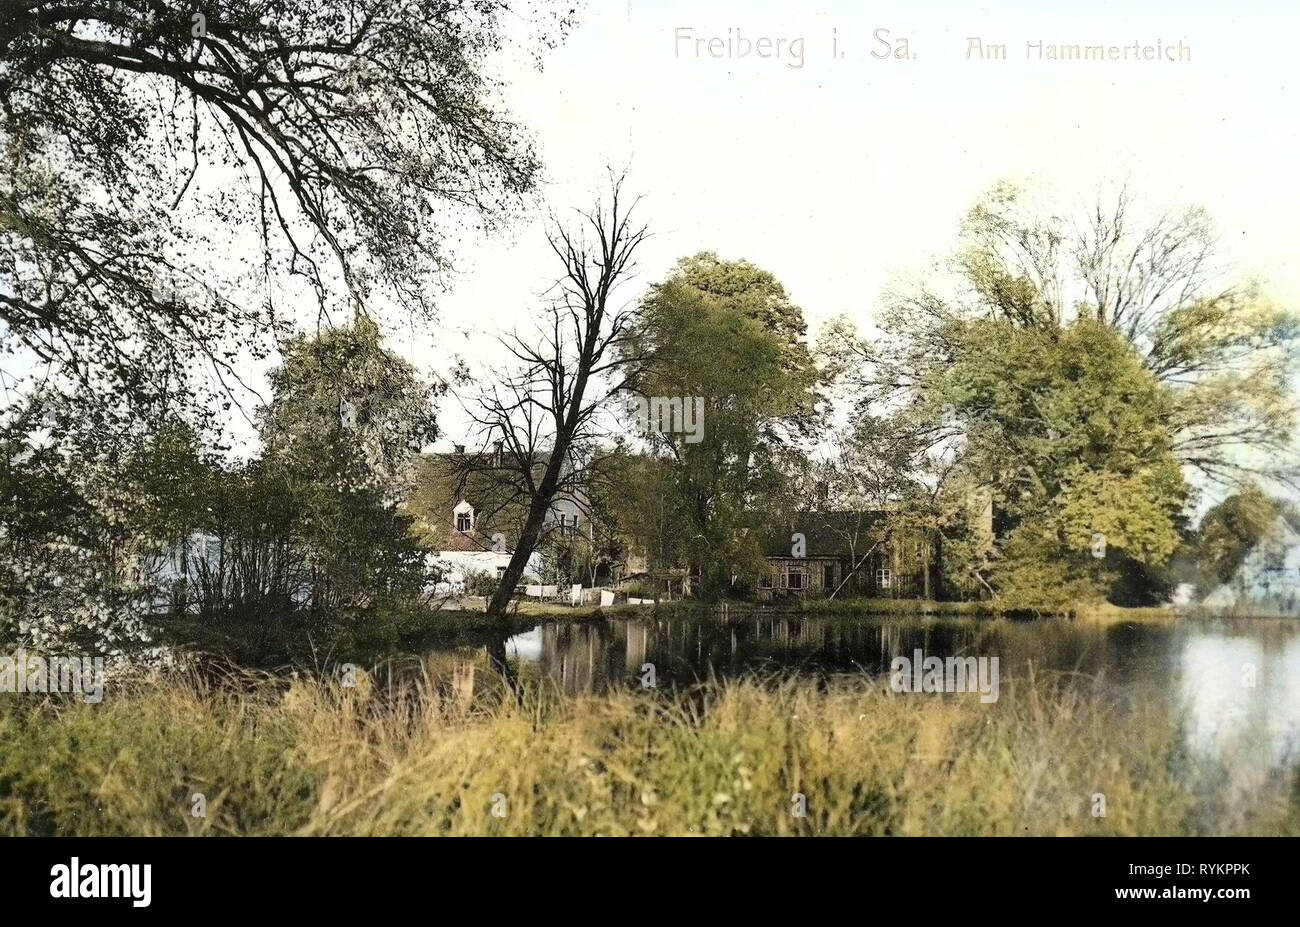 Ponds in Landkreis Mittelsachsen, Buildings in Freiberg (Sachsen), 1913, Landkreis Mittelsachsen, Freiberg, Am Hammerteich, Germany Stock Photo